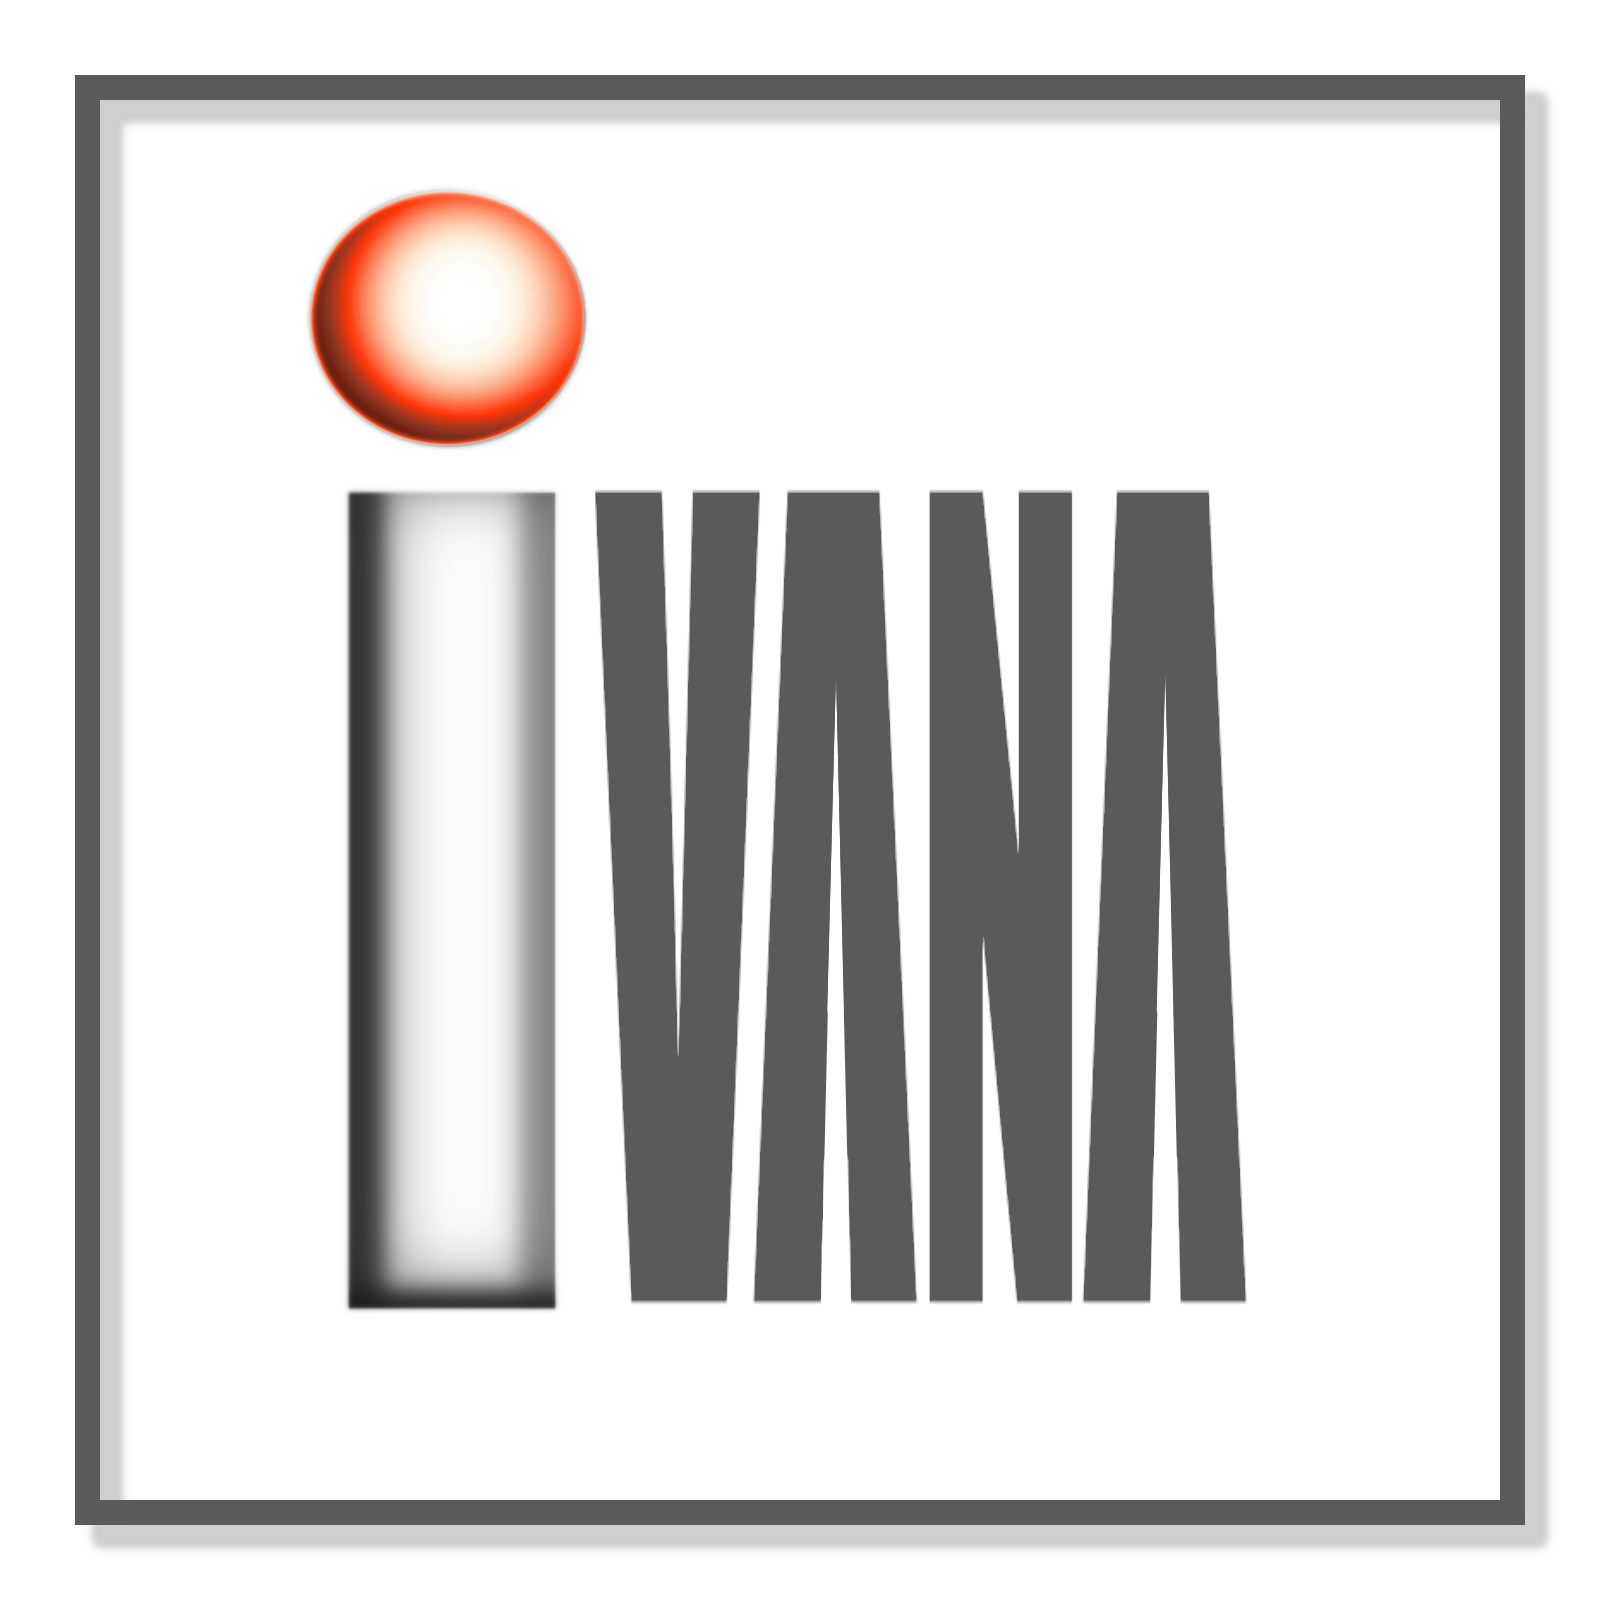 Ivana Logo